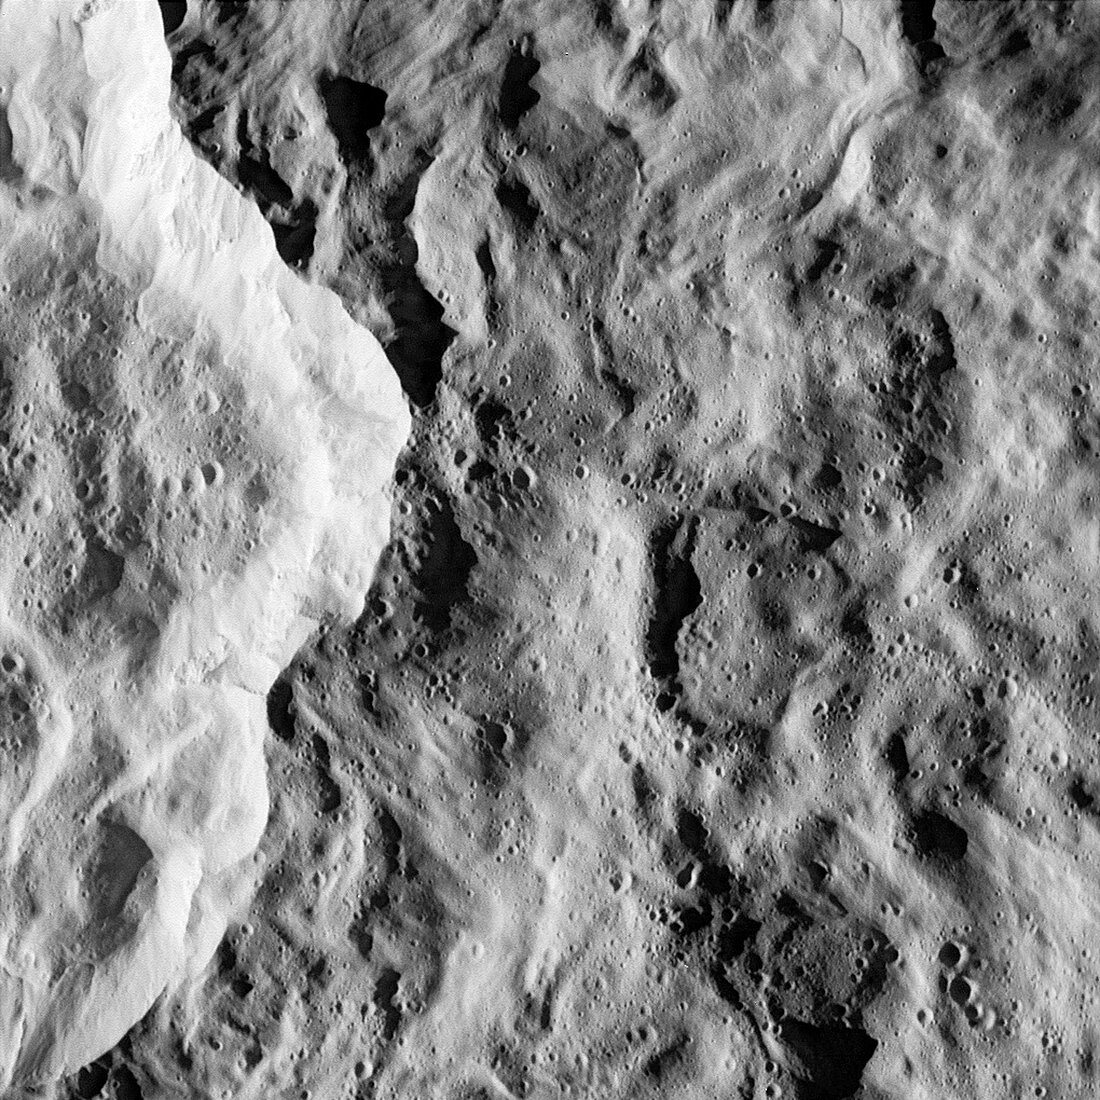 Rhea's surface,Cassini image